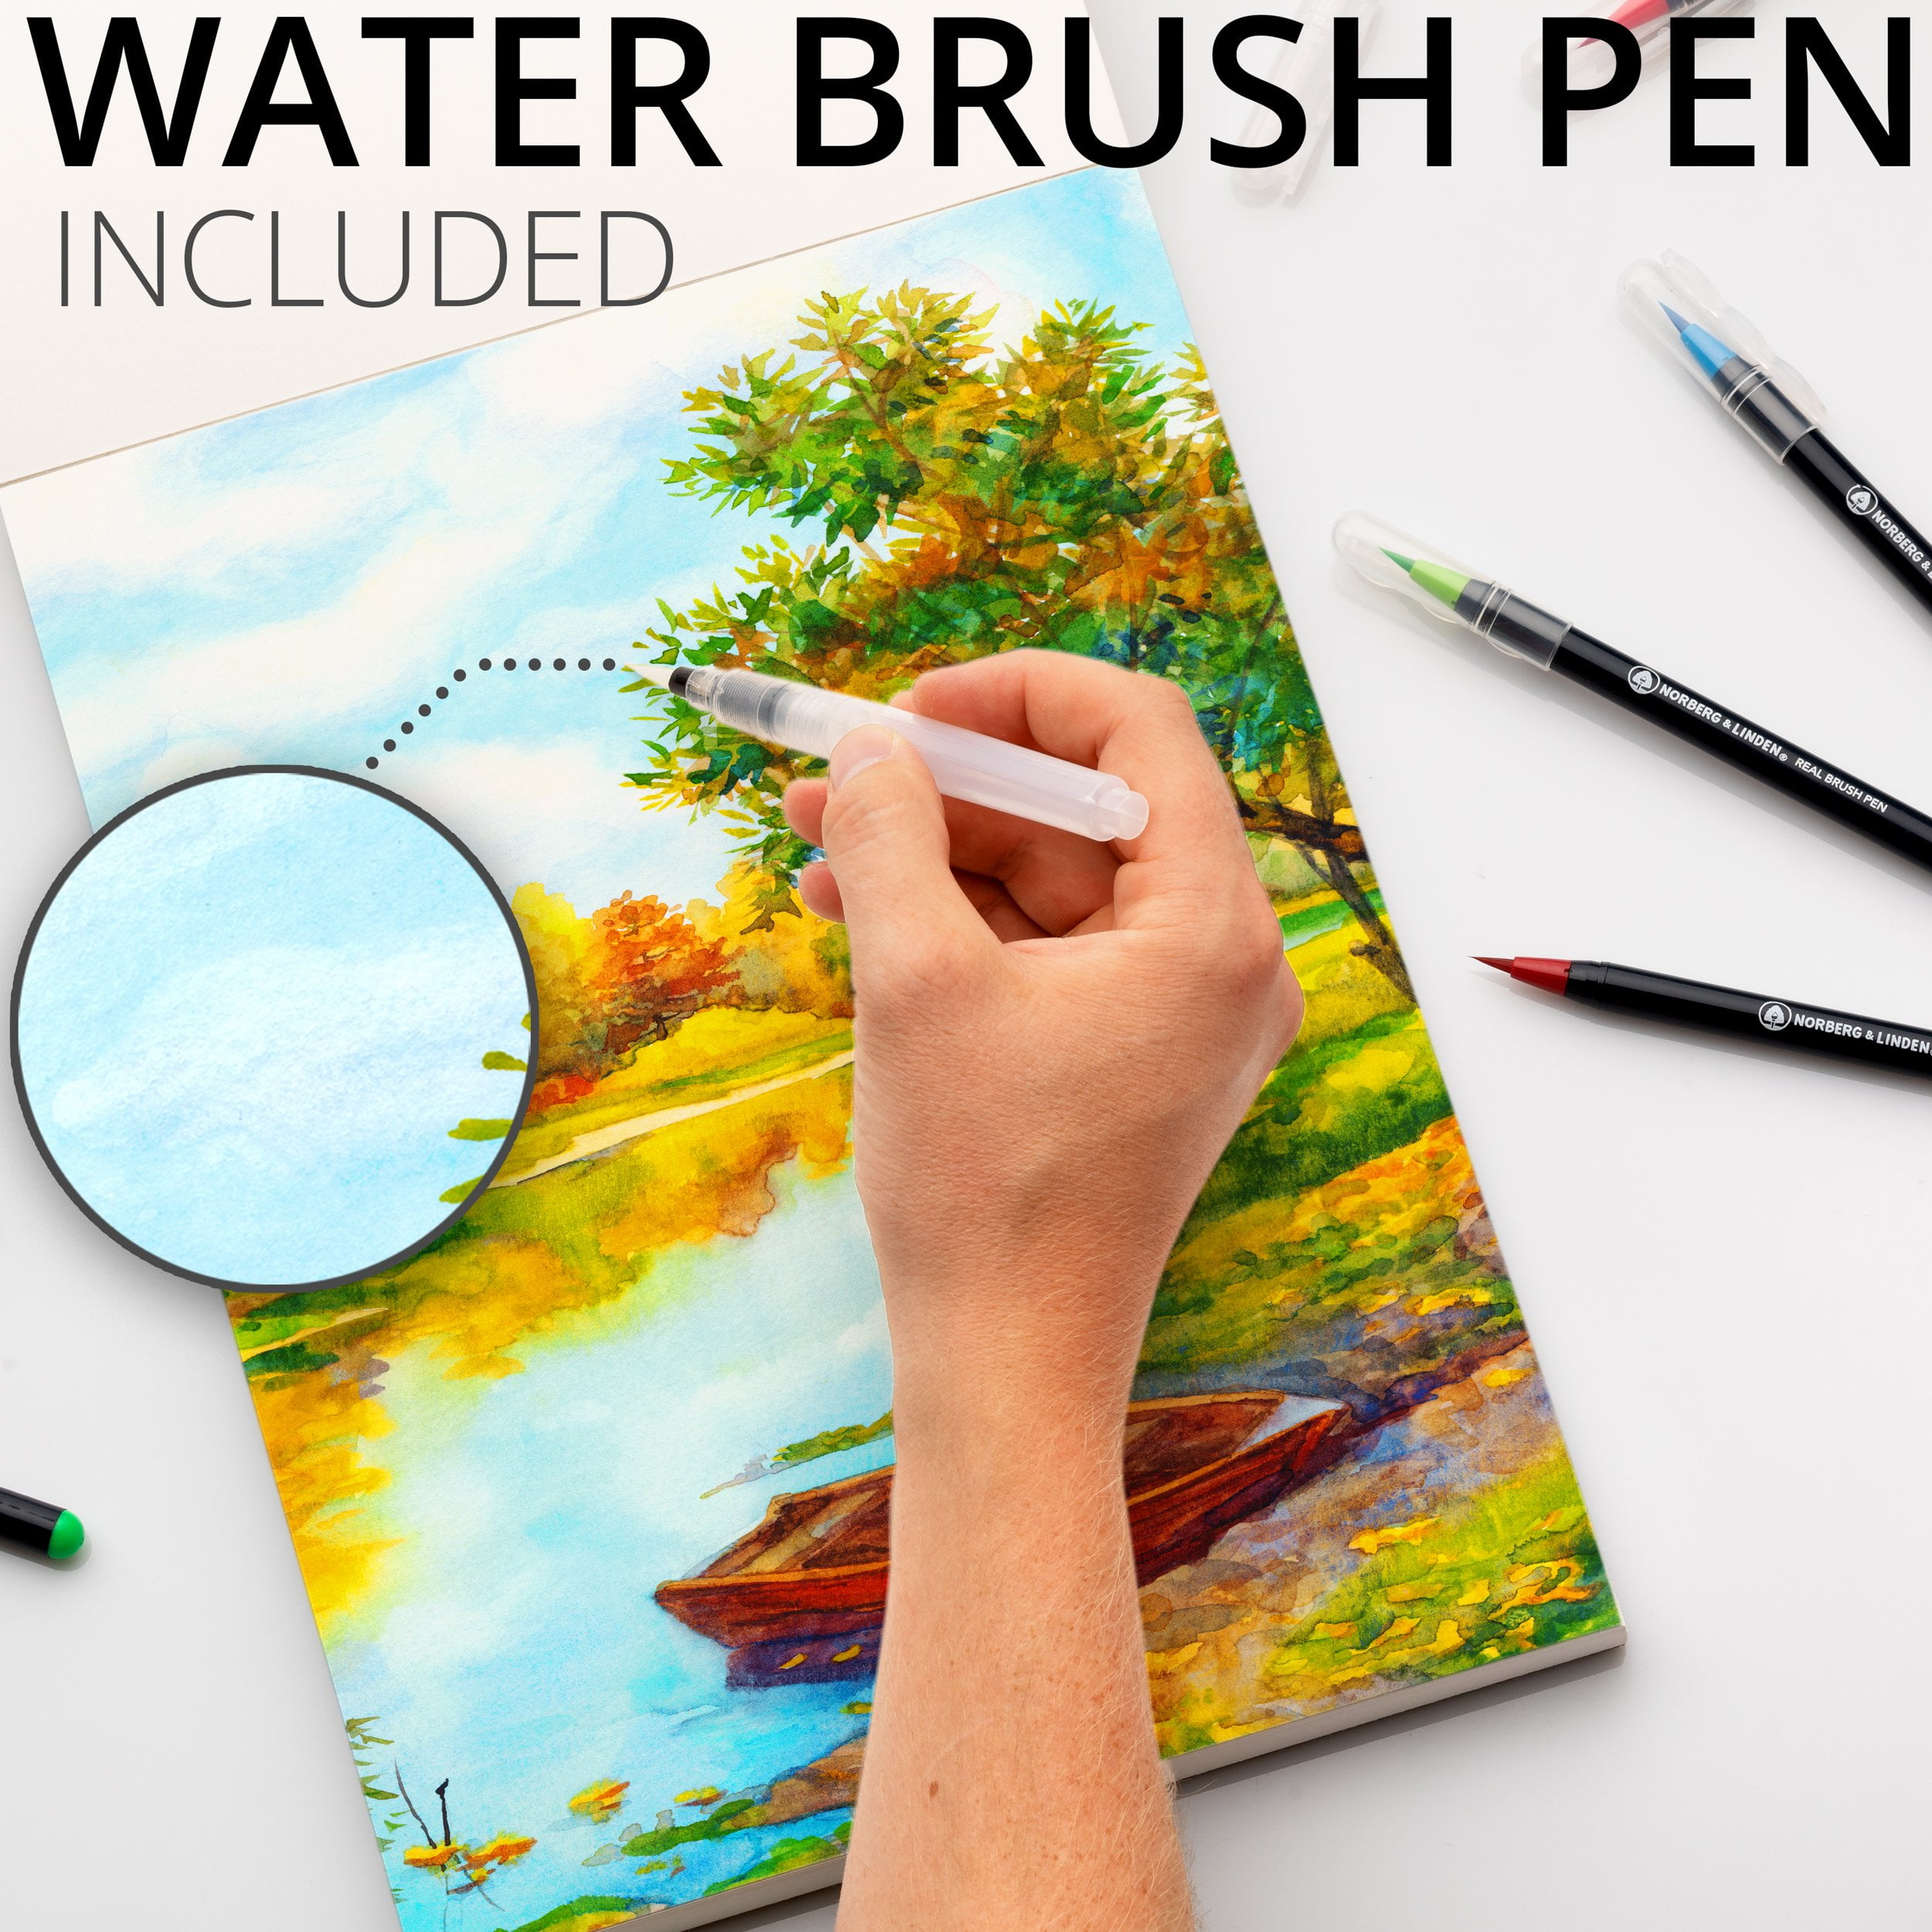 Watercolor paint pens – set of 48 watercolor brush pens